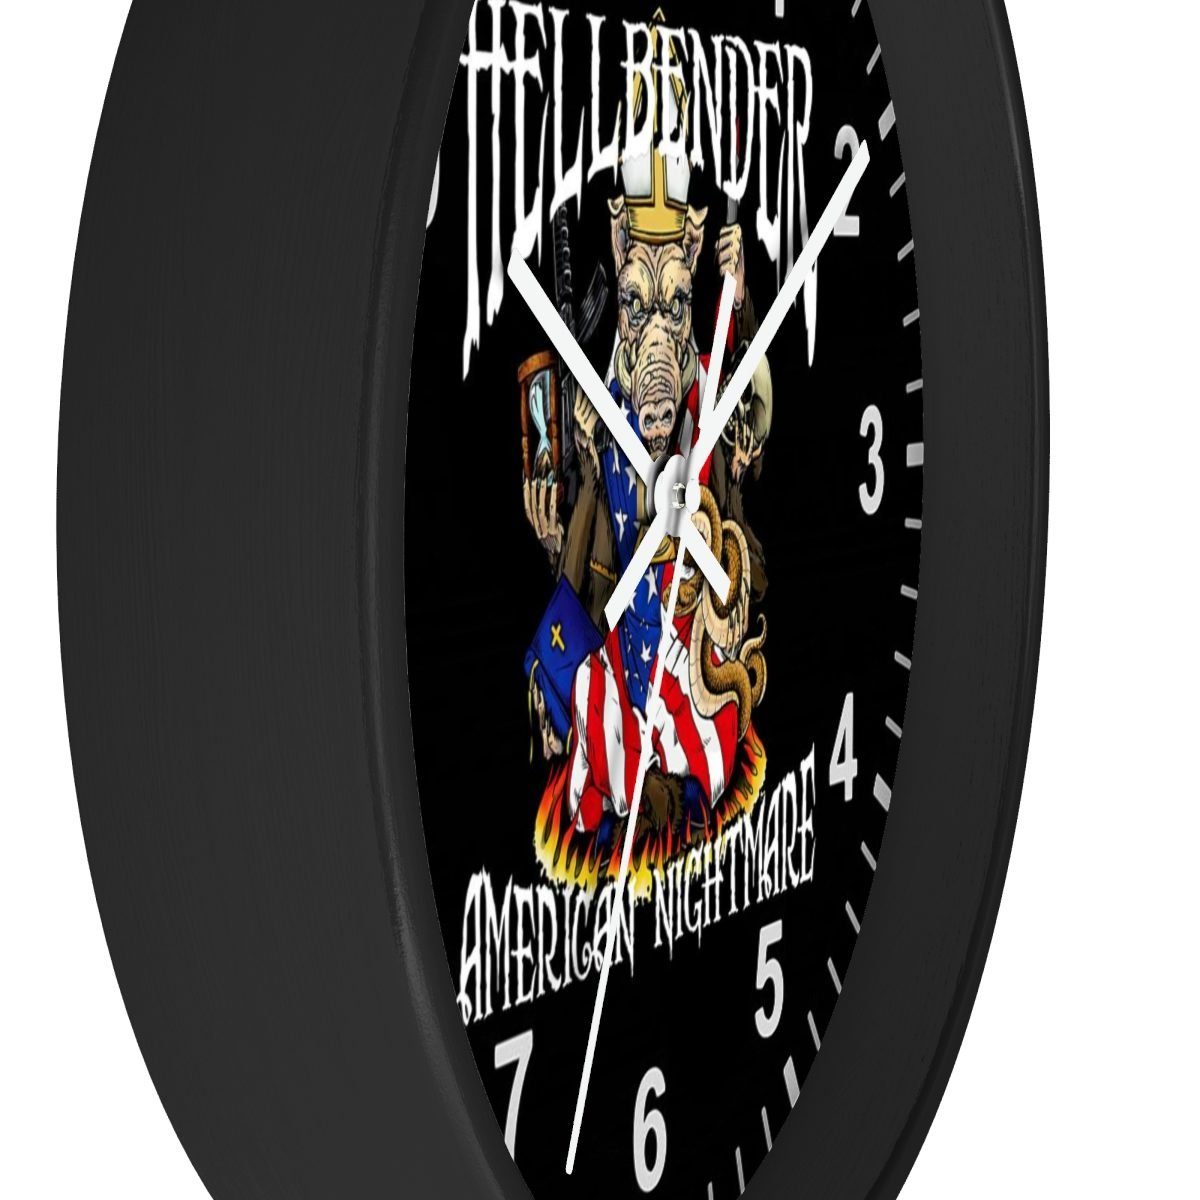 Hellbender – American Nightmare Wall clock